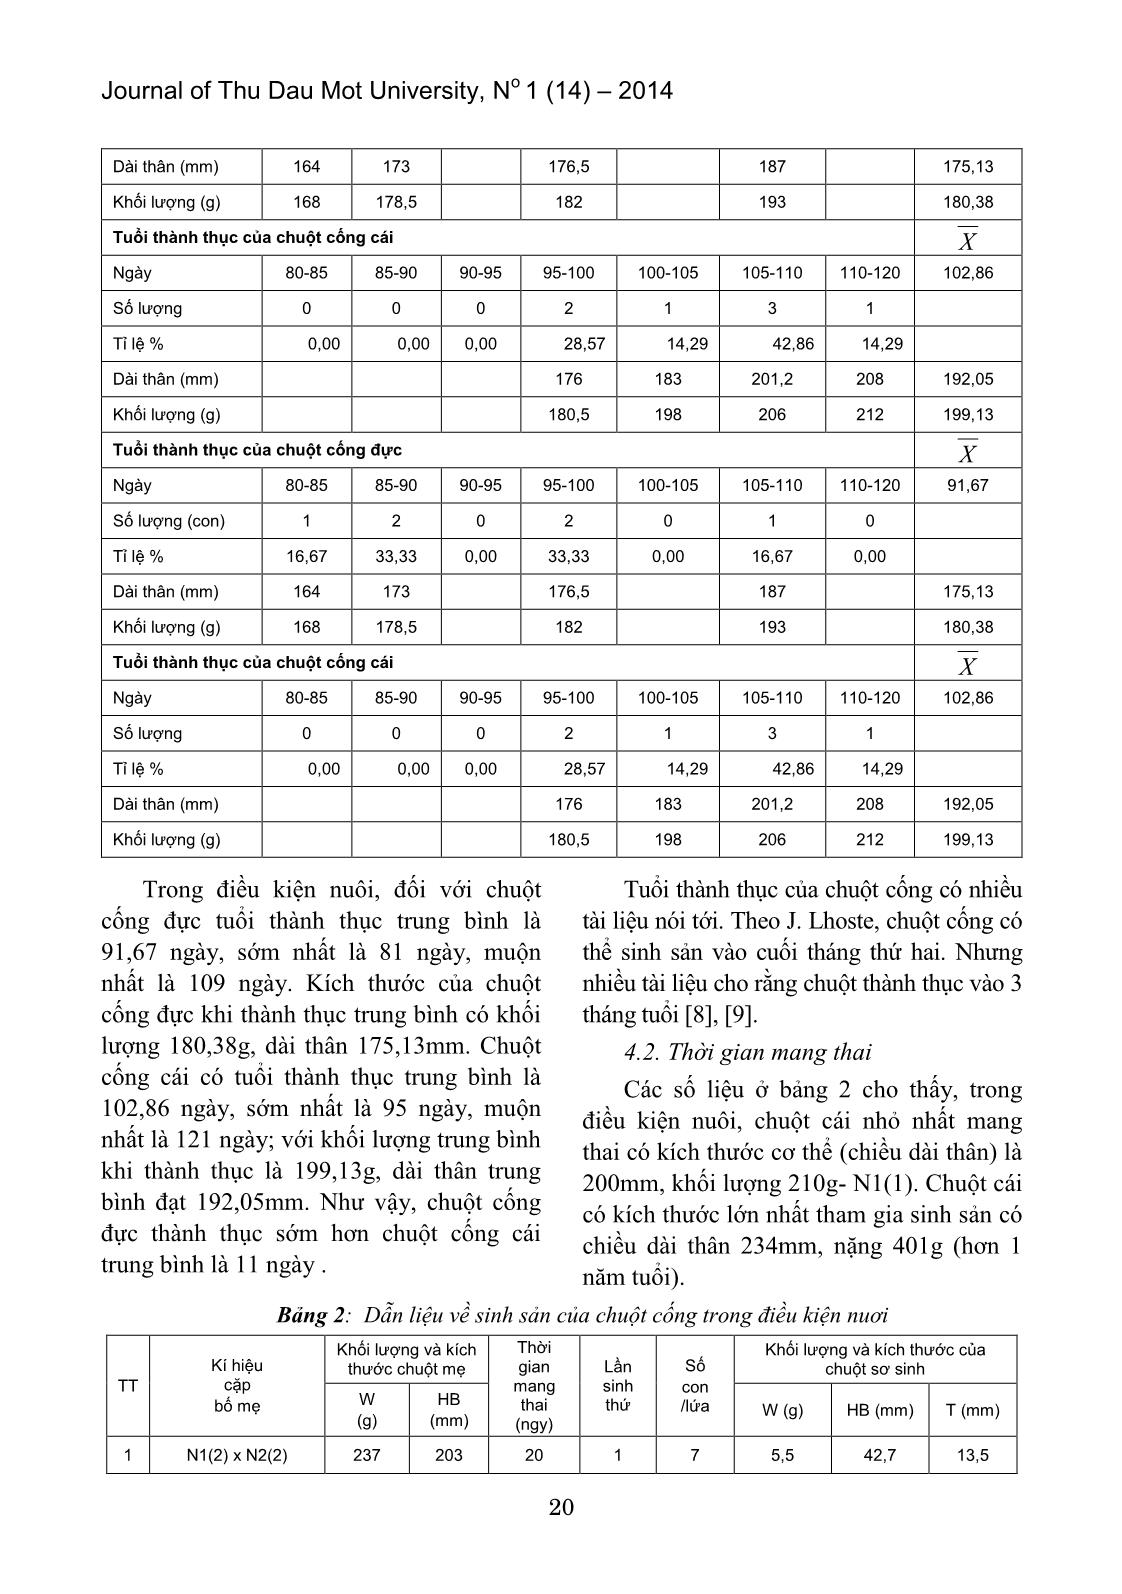 Sự sinh sản của chuột cống trong điều kiện nuôi tại huyện Phù Mỹ tỉnh Bình Định trang 4